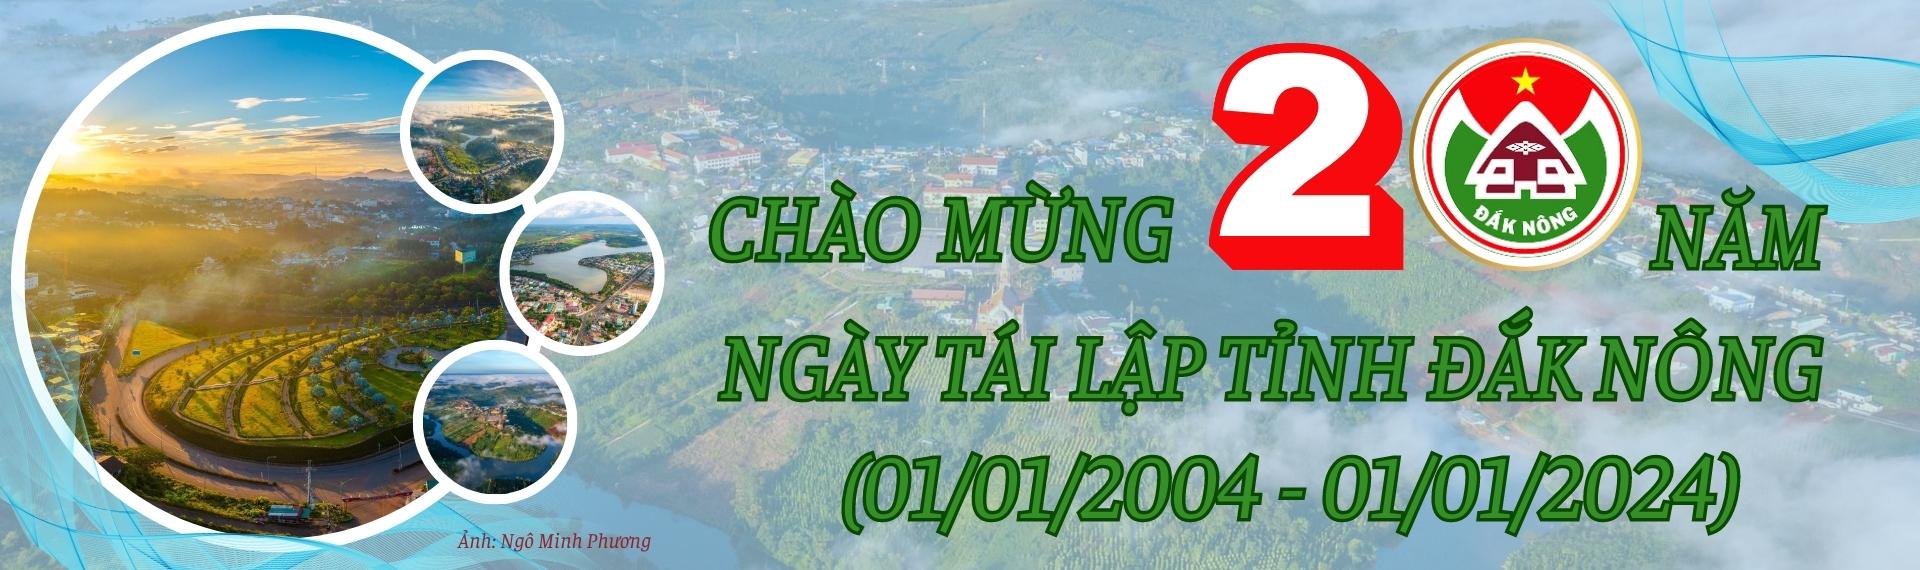 1. banner website chao mung 20 nam Ngay tai lap tinh Dak Nong